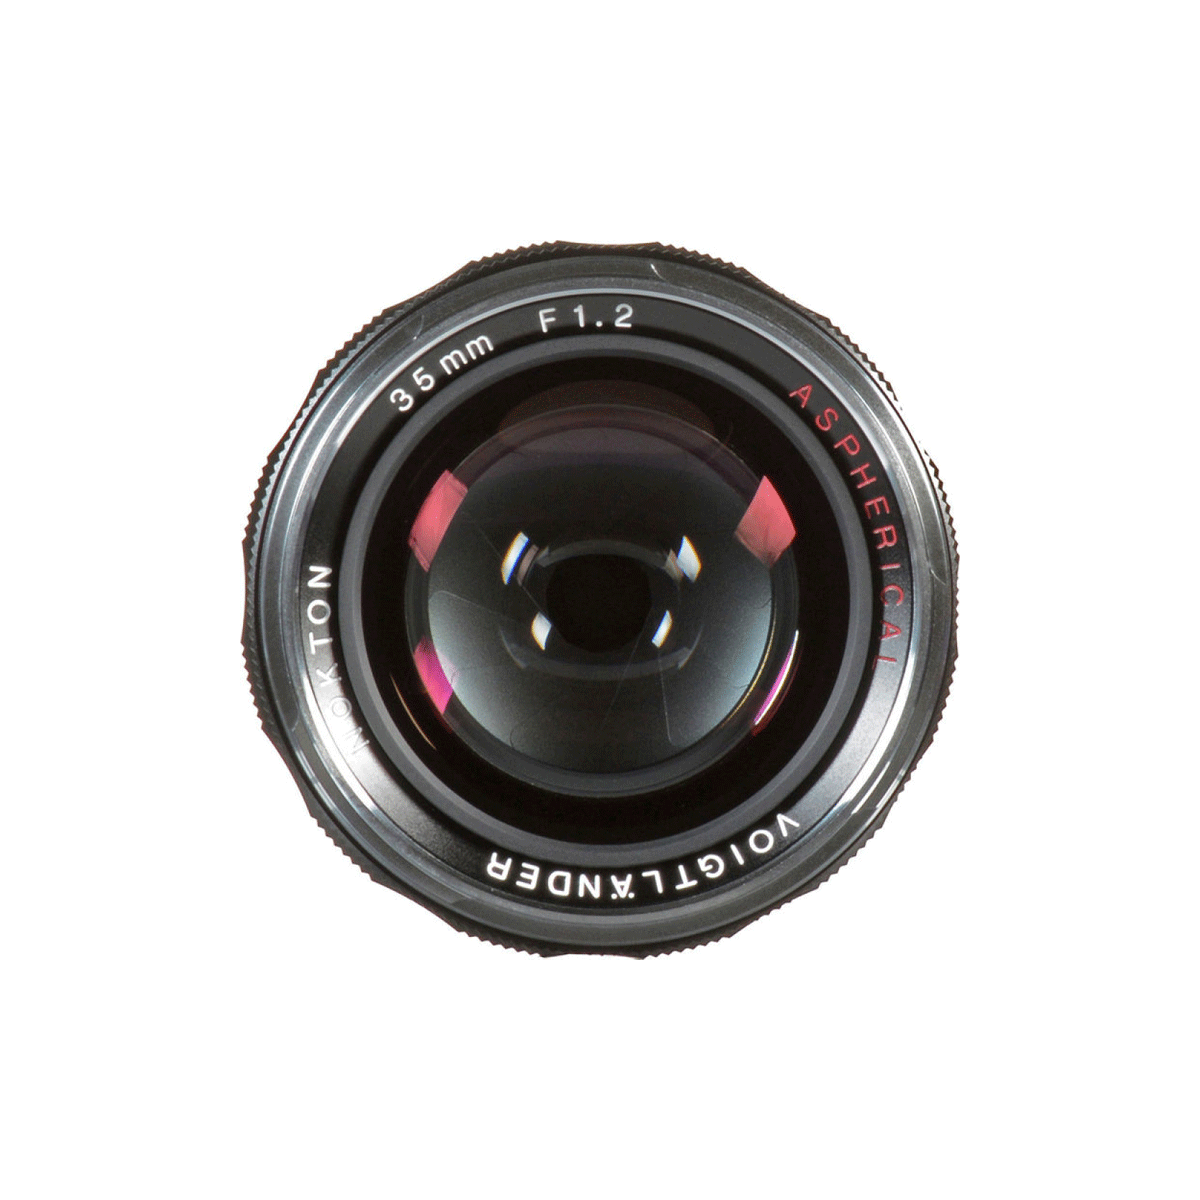  Ống kính Voigtlander NOKTON 35mm F1.2 Aspherical VM II - Chính hãng 